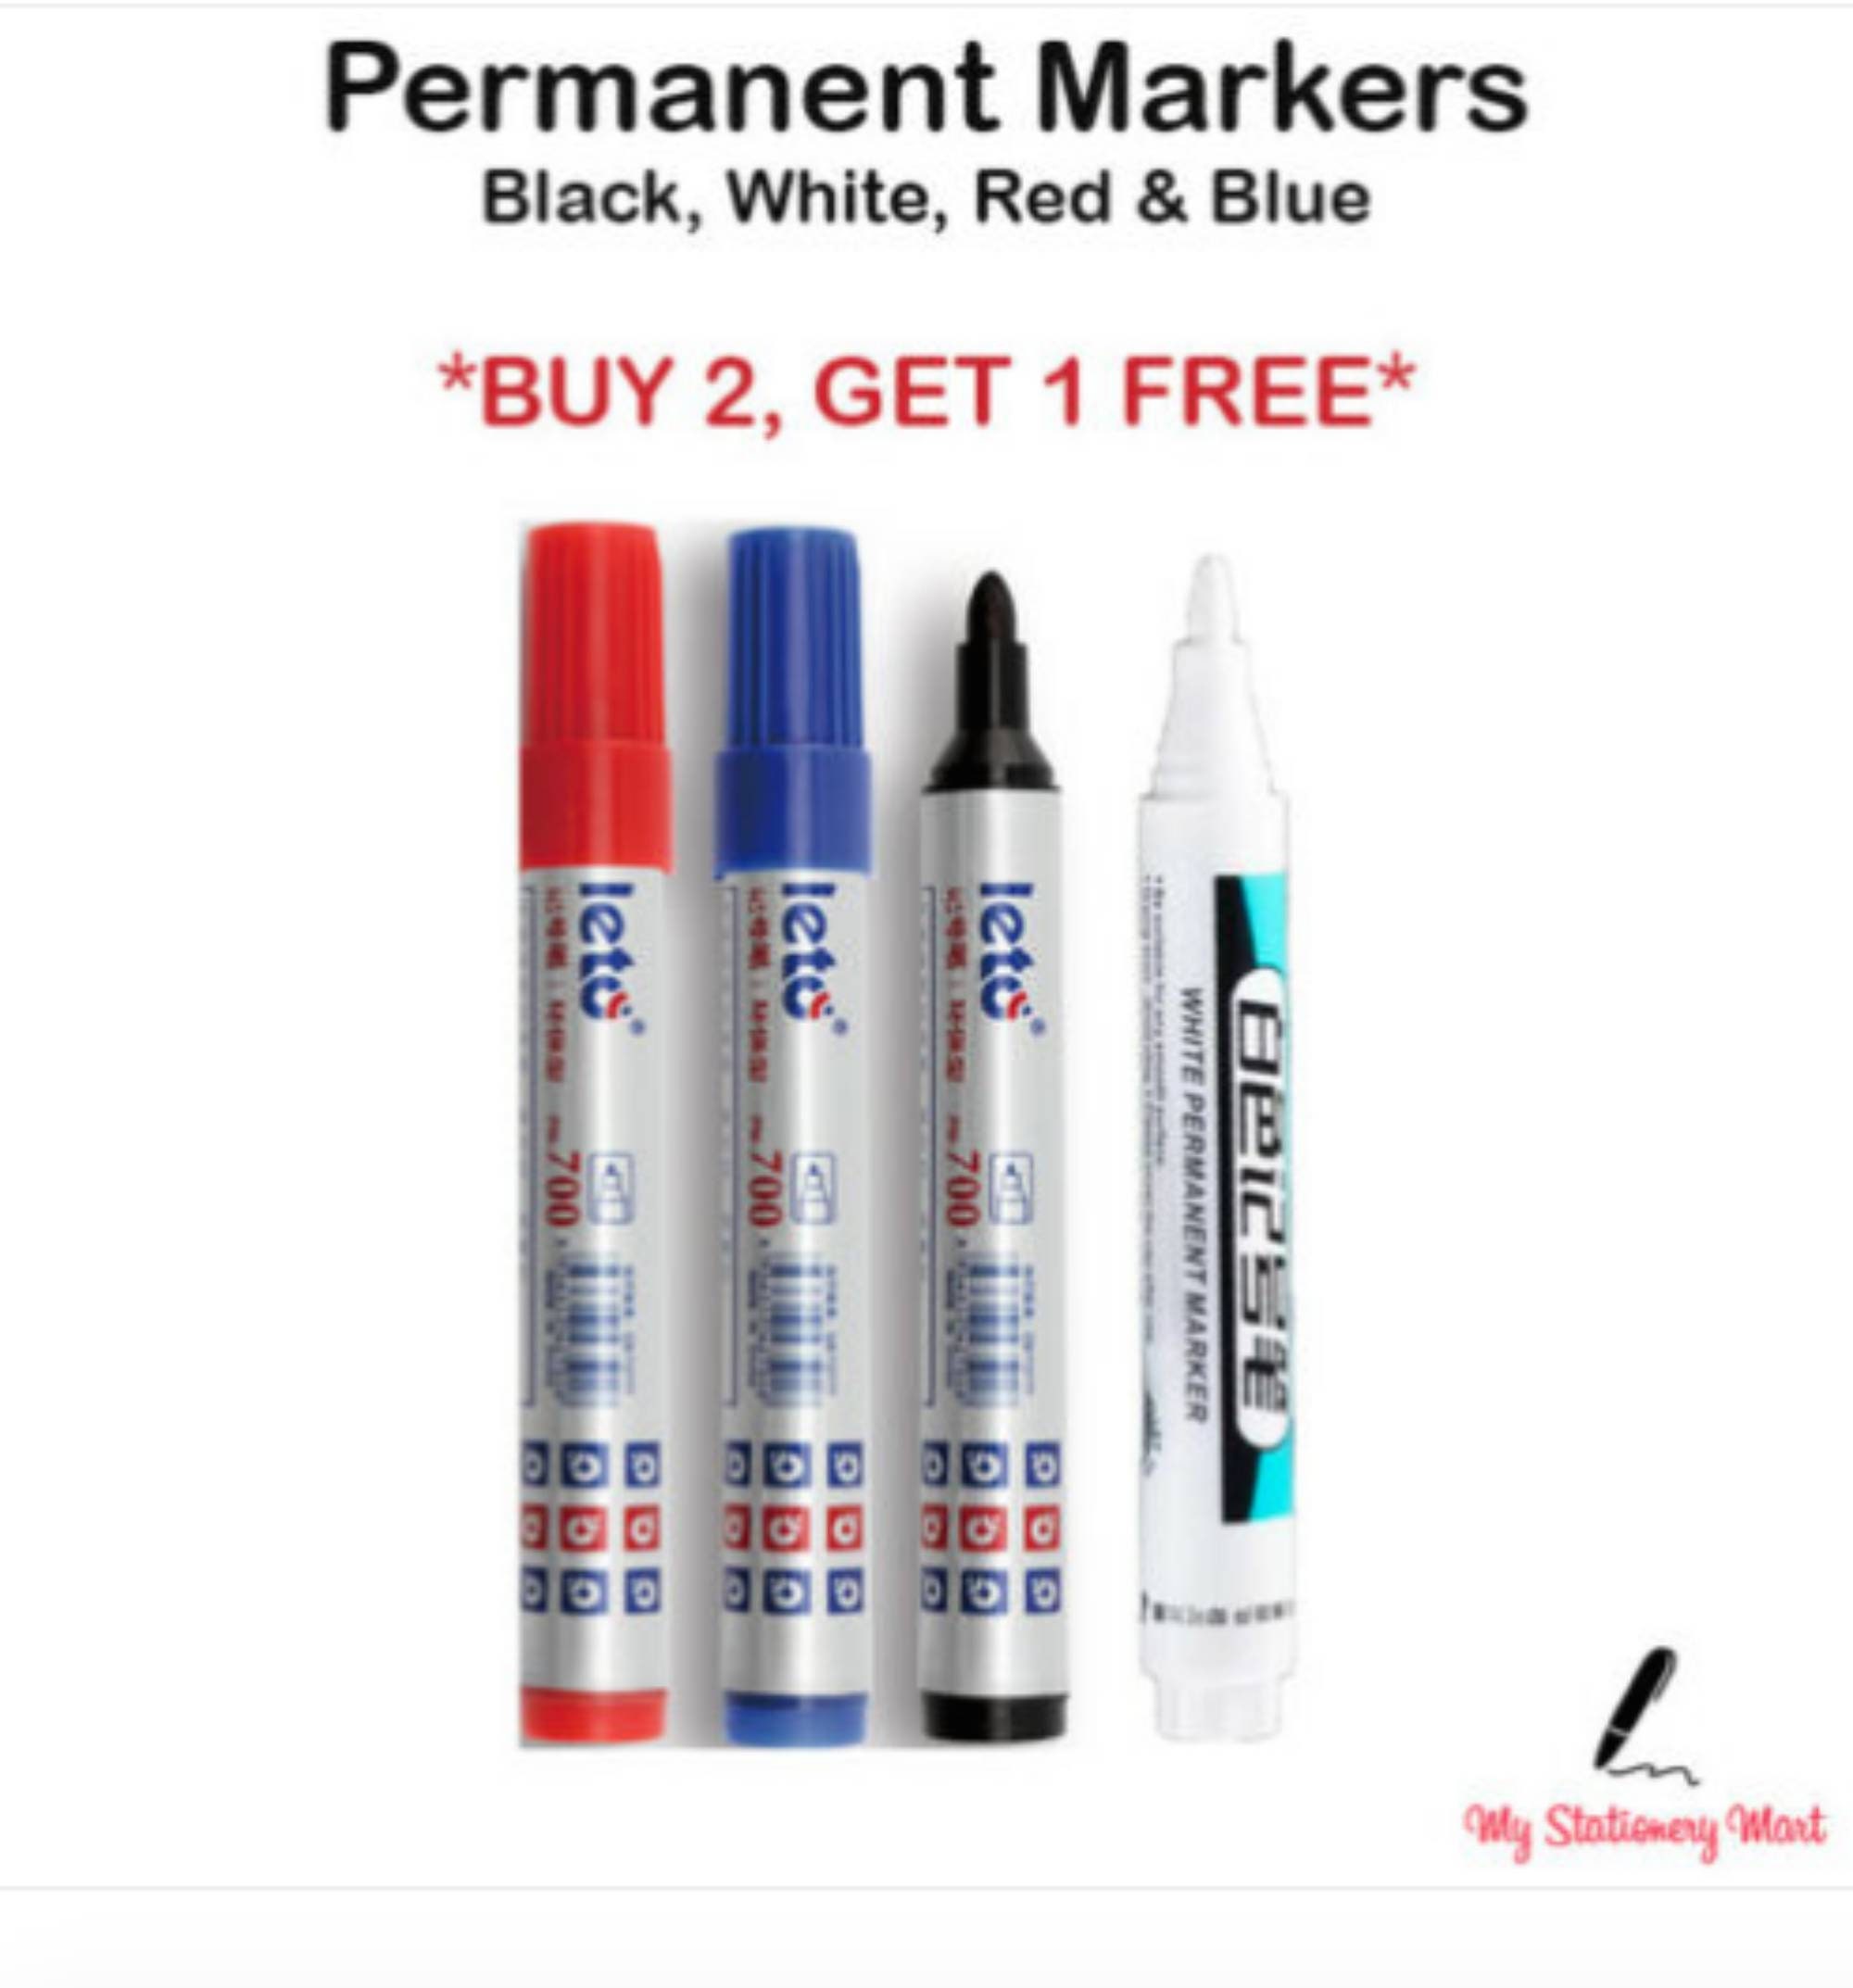 POSCA PC-5M Paint Marker Art Pens 1.8-2.5mm Spring Tones 8 Pens